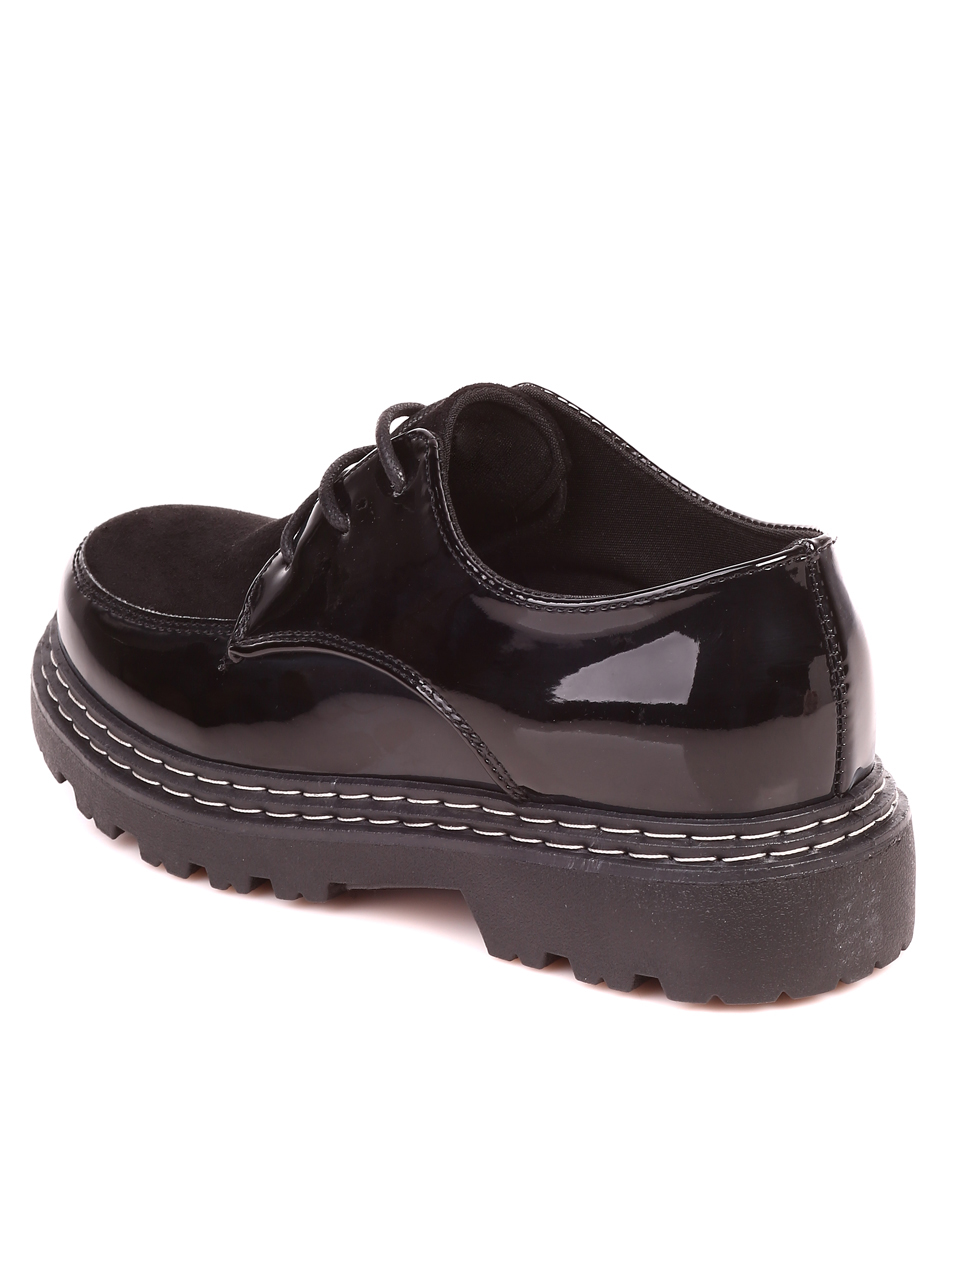 Ежедневни дамски лачени обувки в черно 3U-21553 black patent